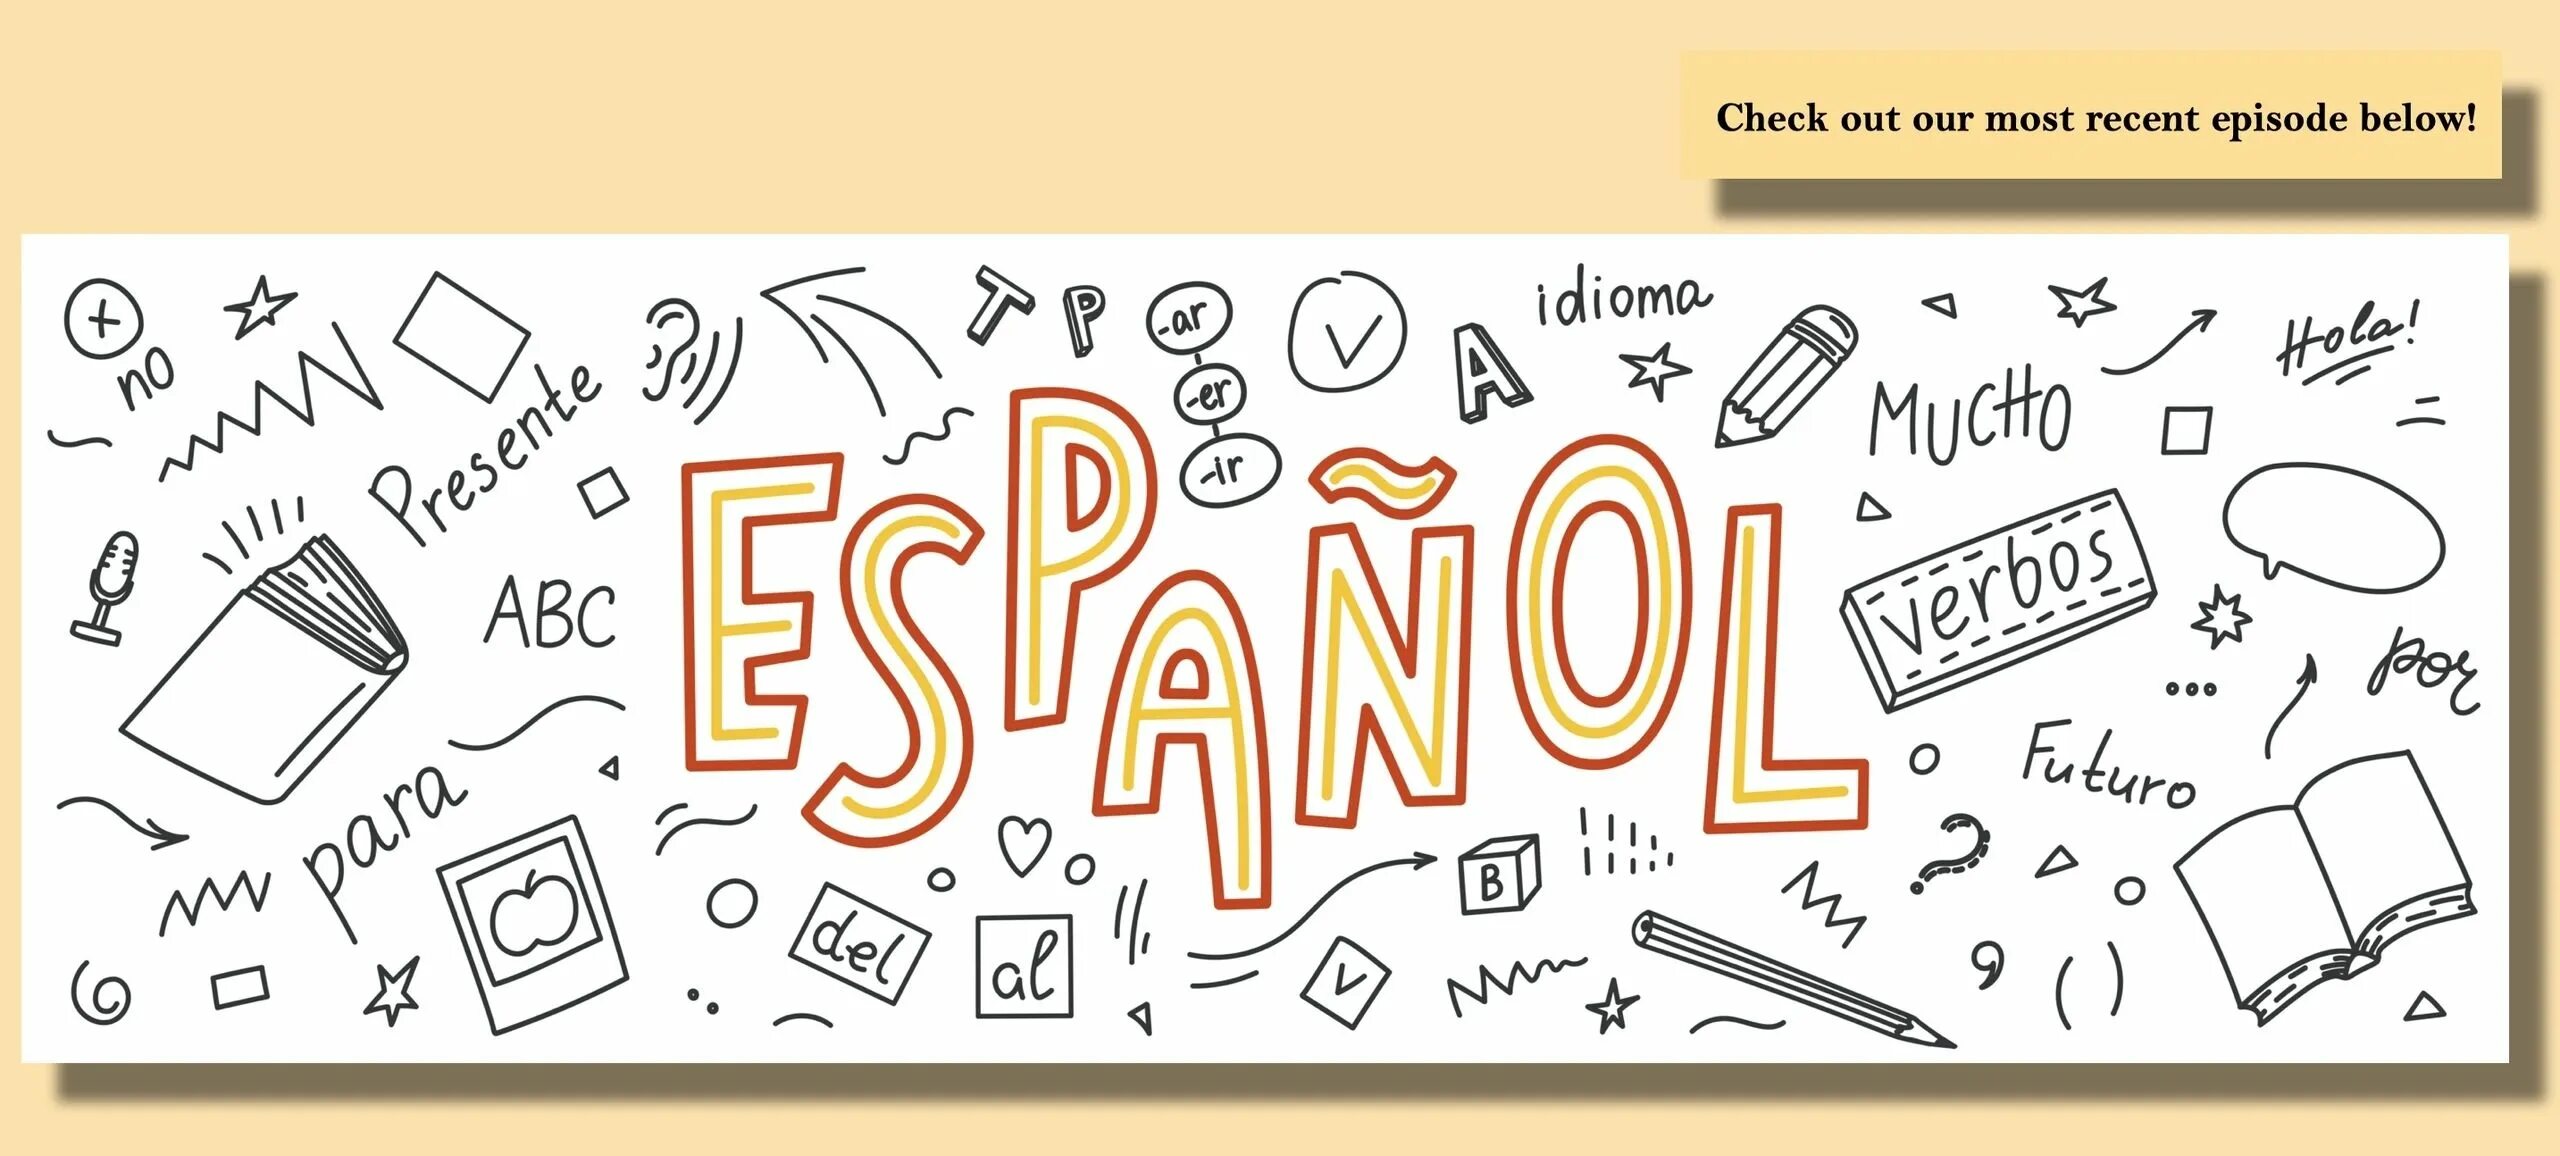 Espanol. Испанский язык чб. Надпись испанский язык. Испанский язык картинки для оформления текста. В школе испанский язык изучают 90 учащихся